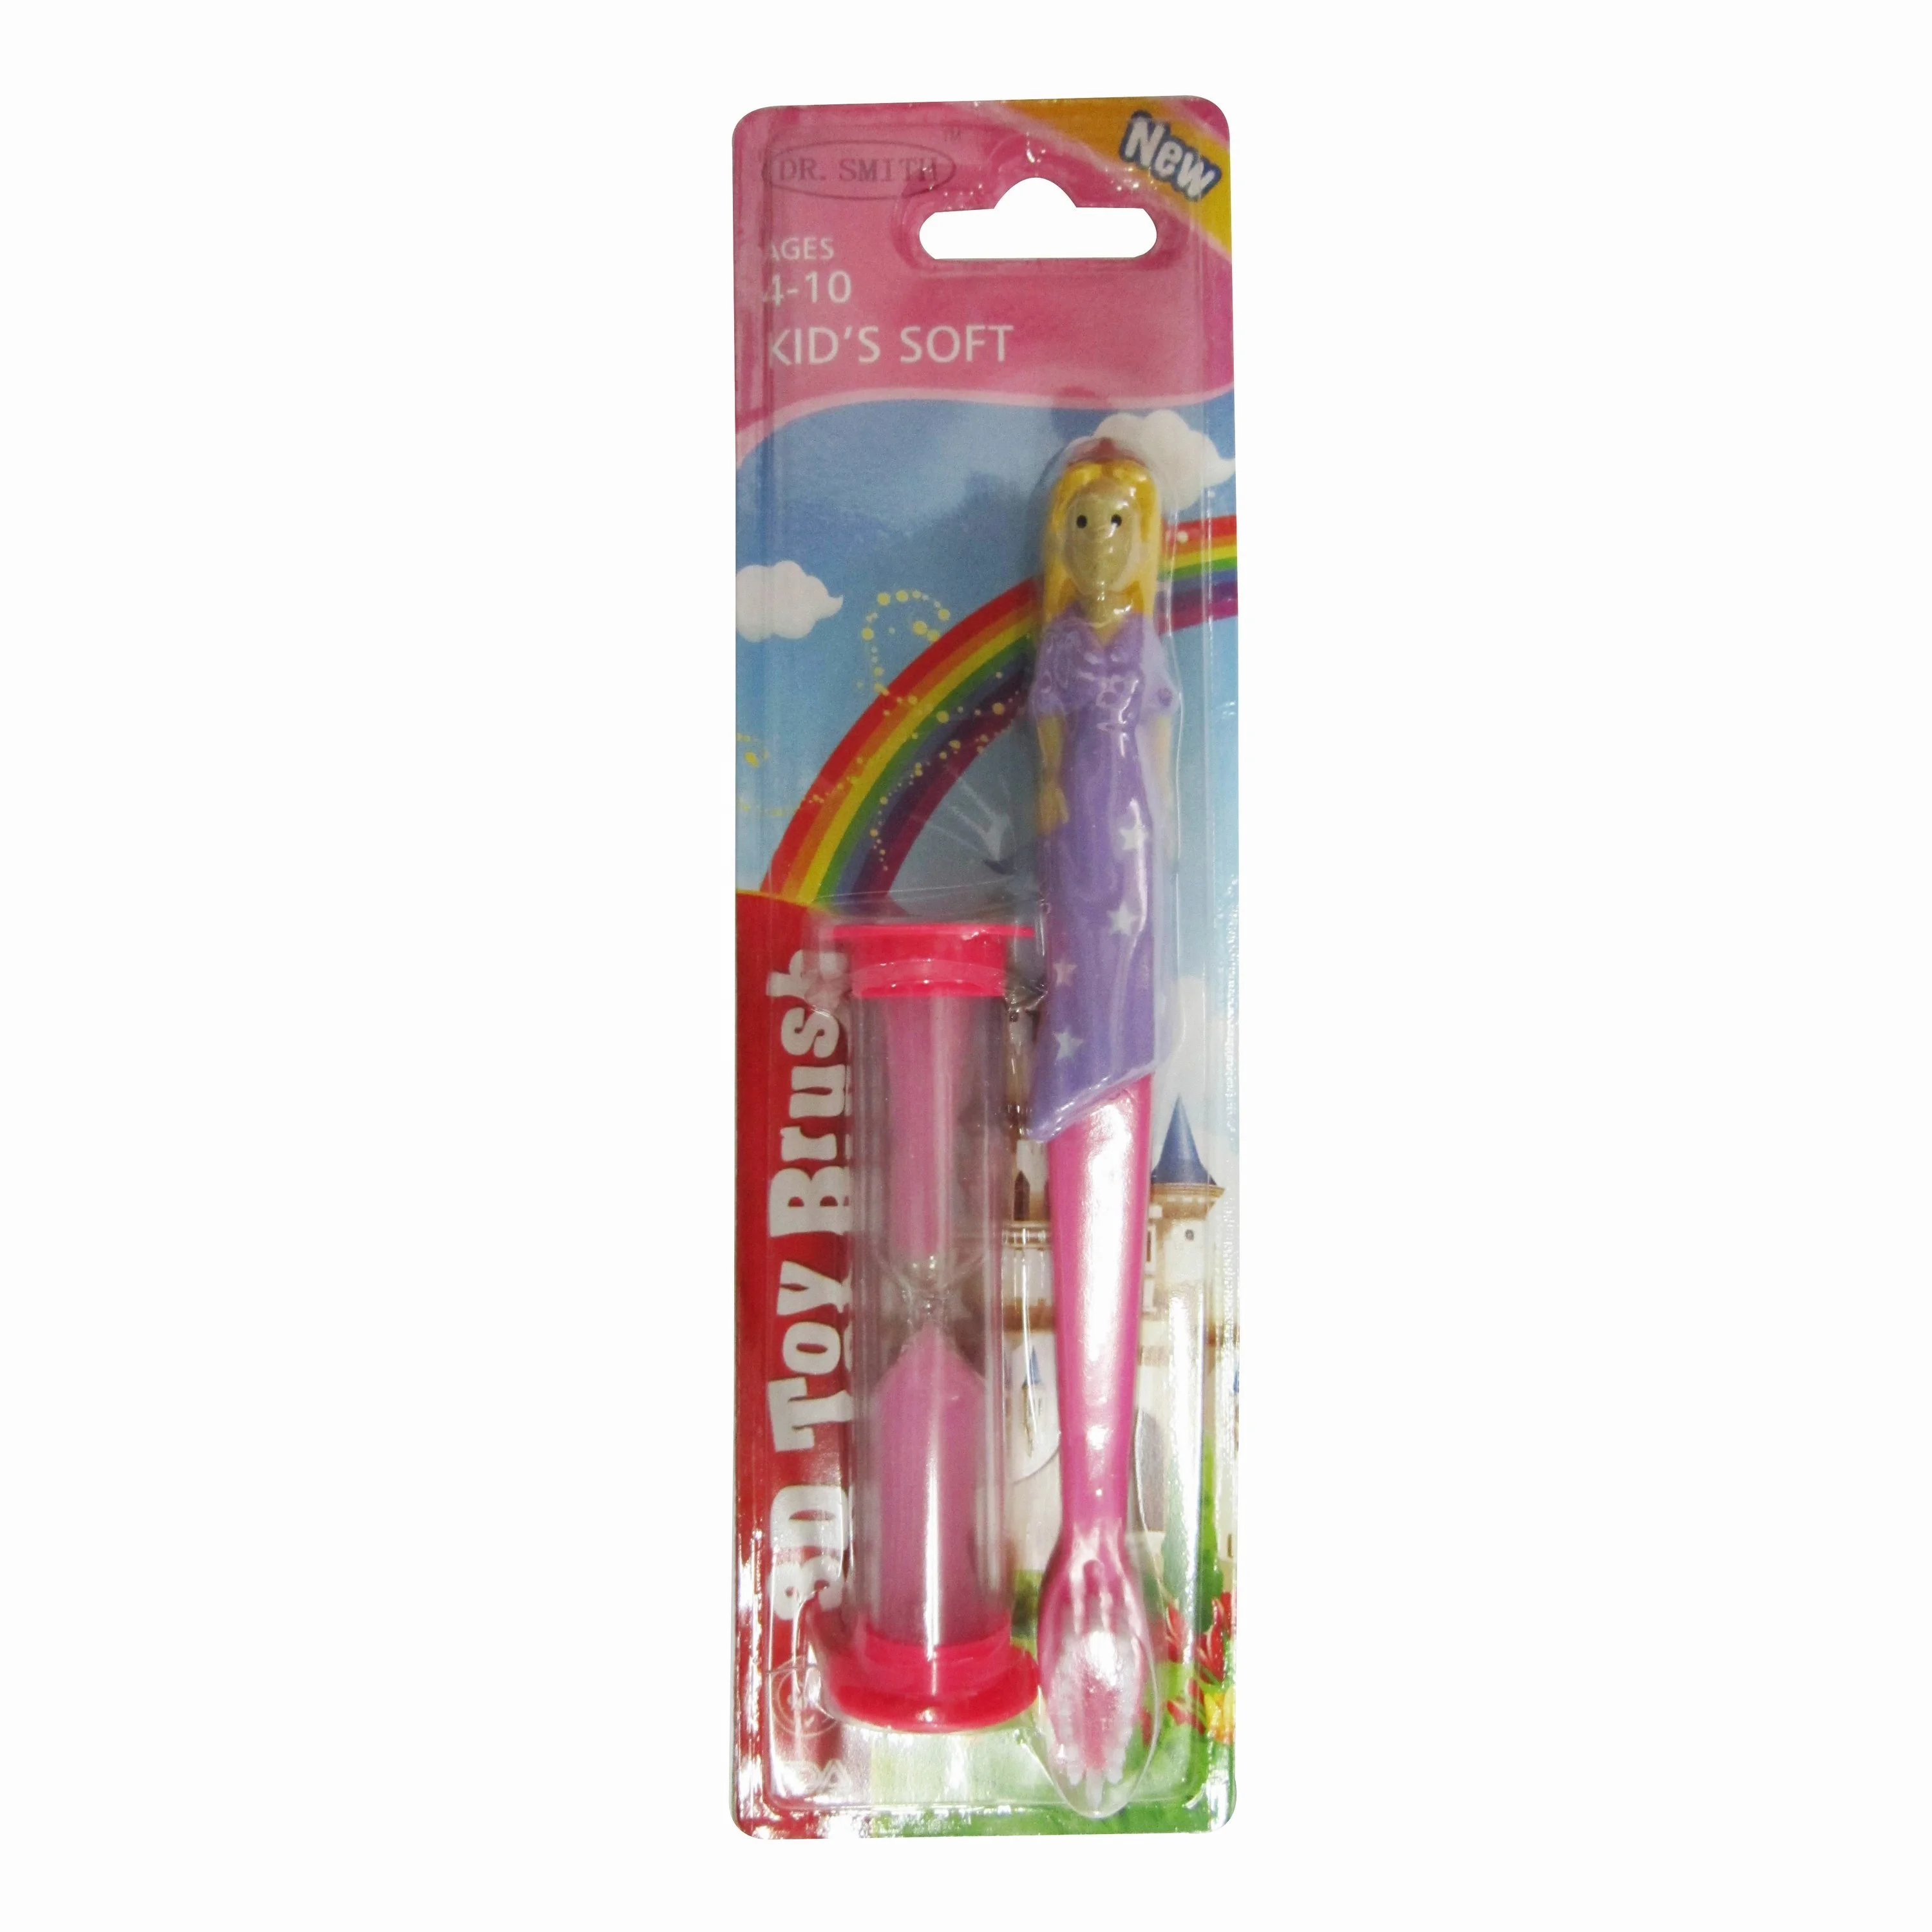 ဒီဇိုင်းအသစ် Bristle 3D Cartoon Princess With Sand Timer Kids Toothbrush u shaped သွားတိုက်တံလေးတွေ